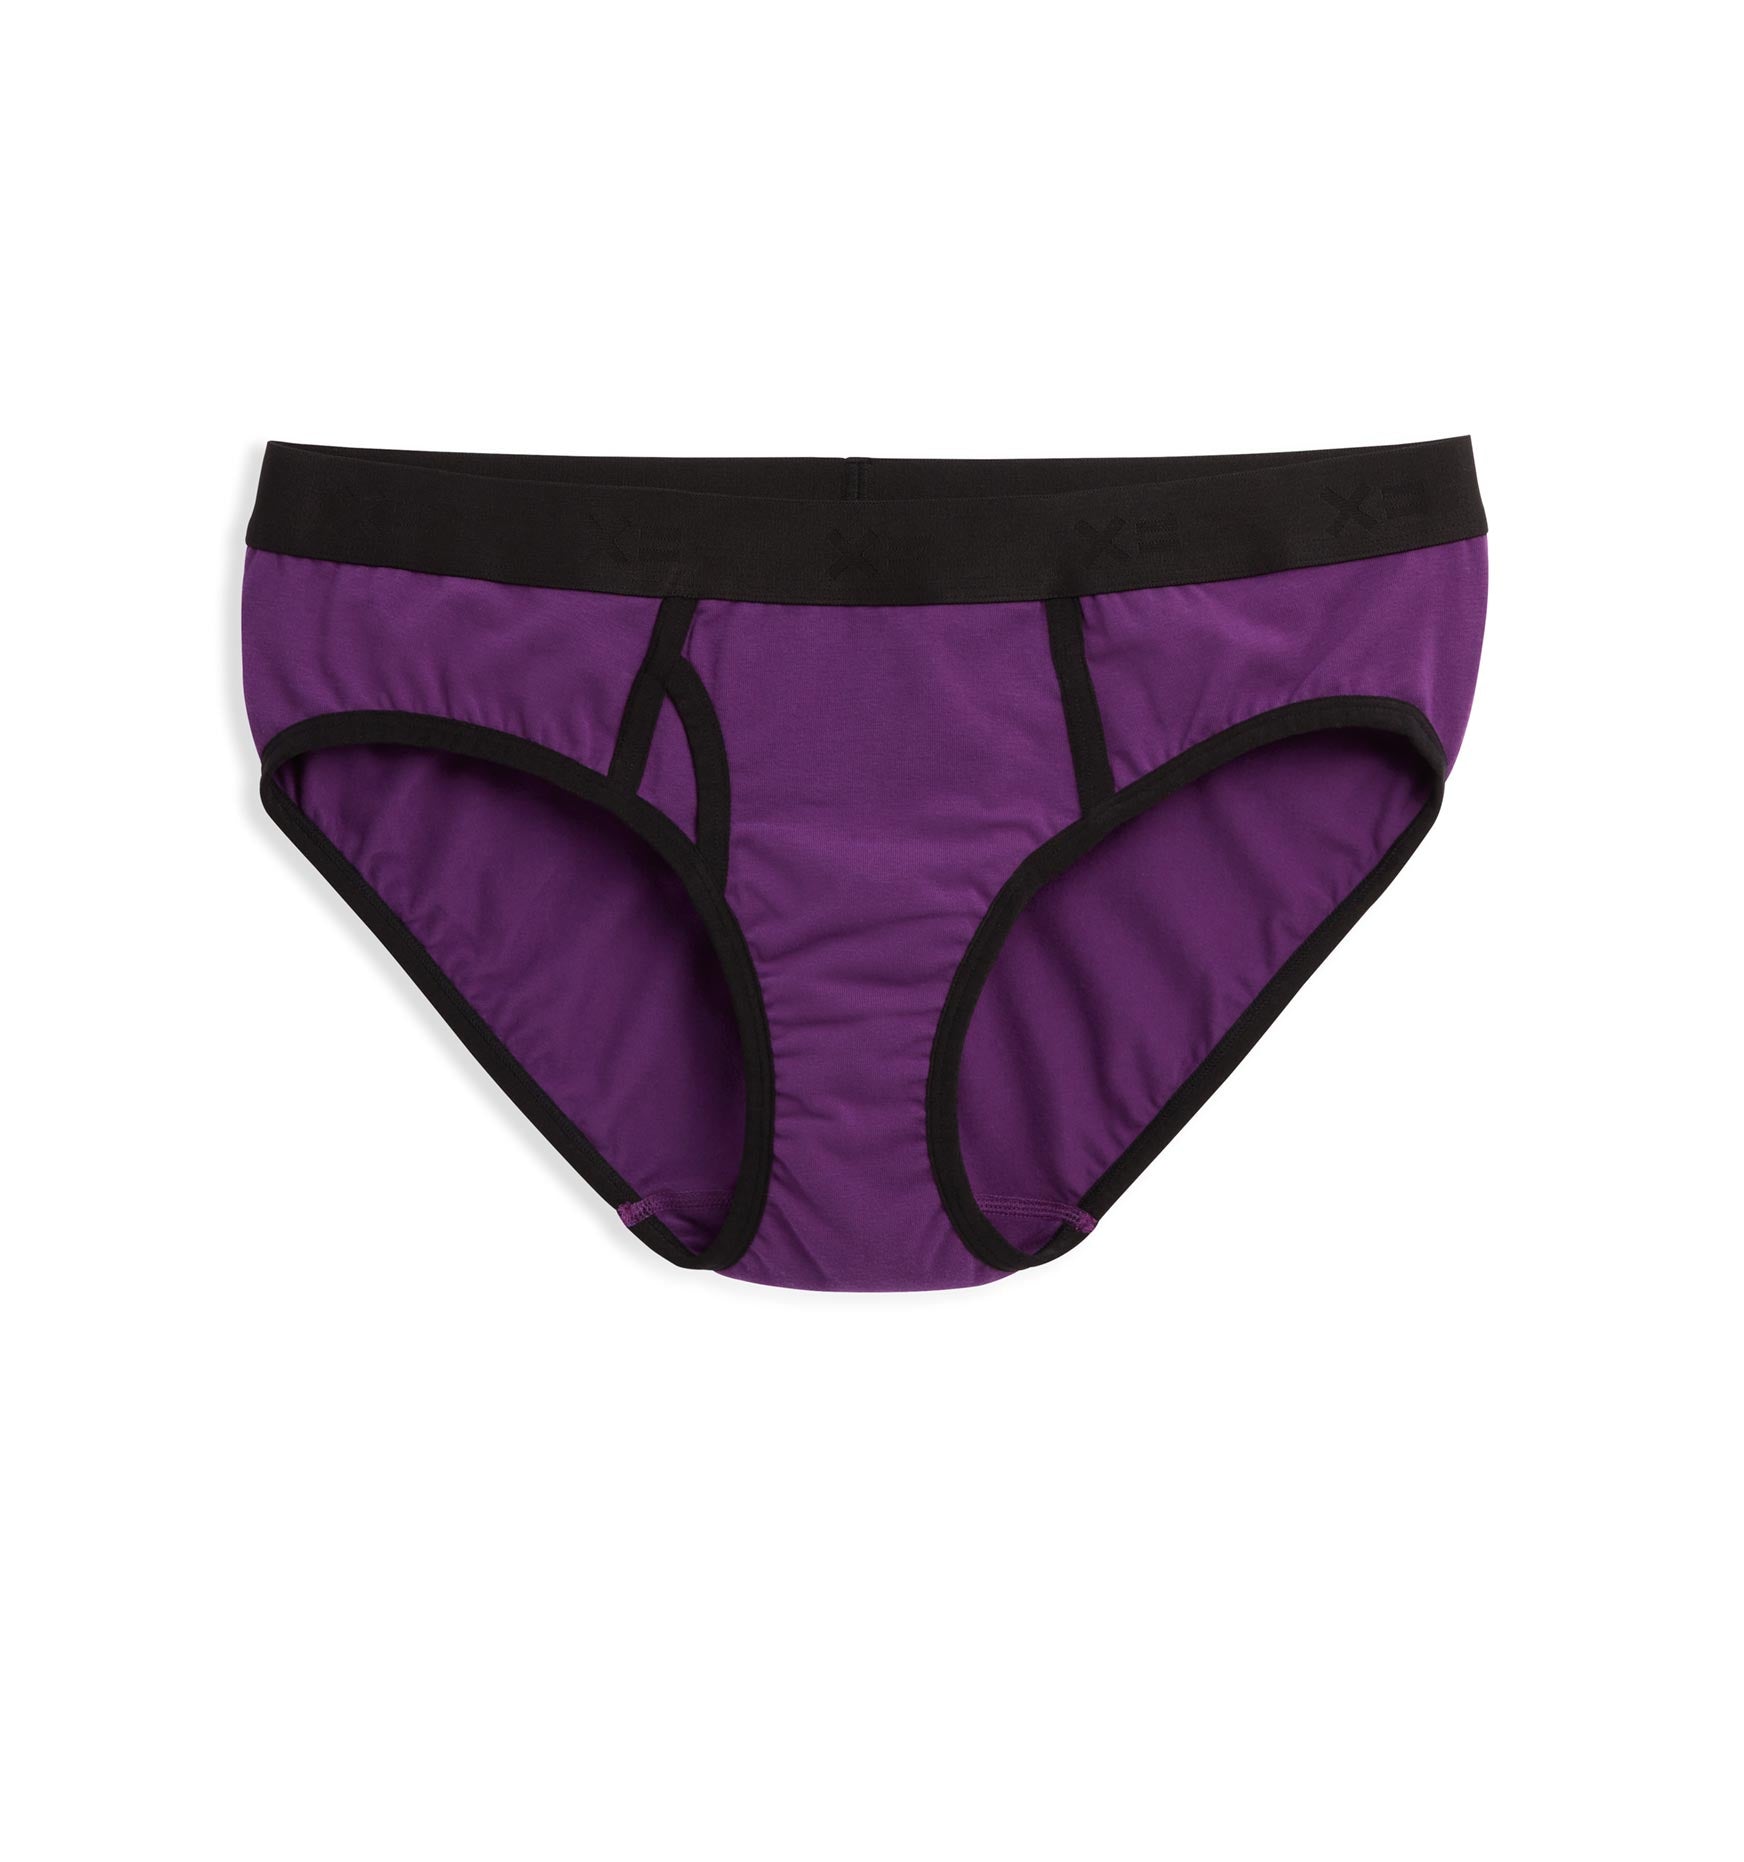 标志性的内裤——帝国紫色